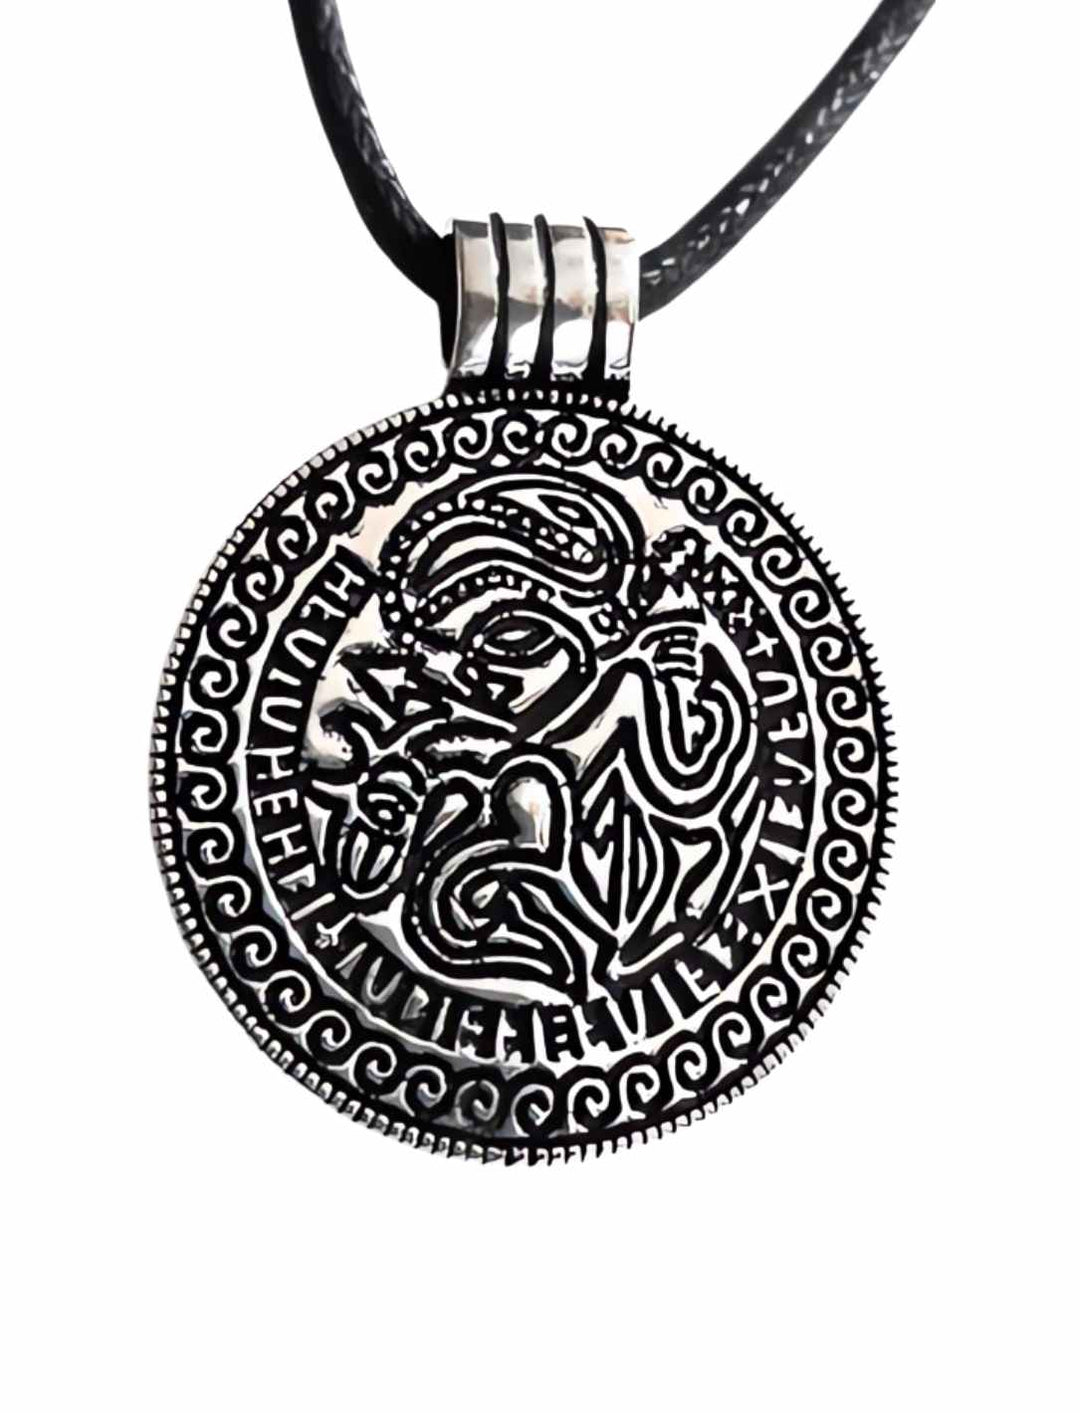 Odin, der nordische Allvater, geprägt auf einen Sterling Silber Anhänger, isoliert auf weißem Hintergrund